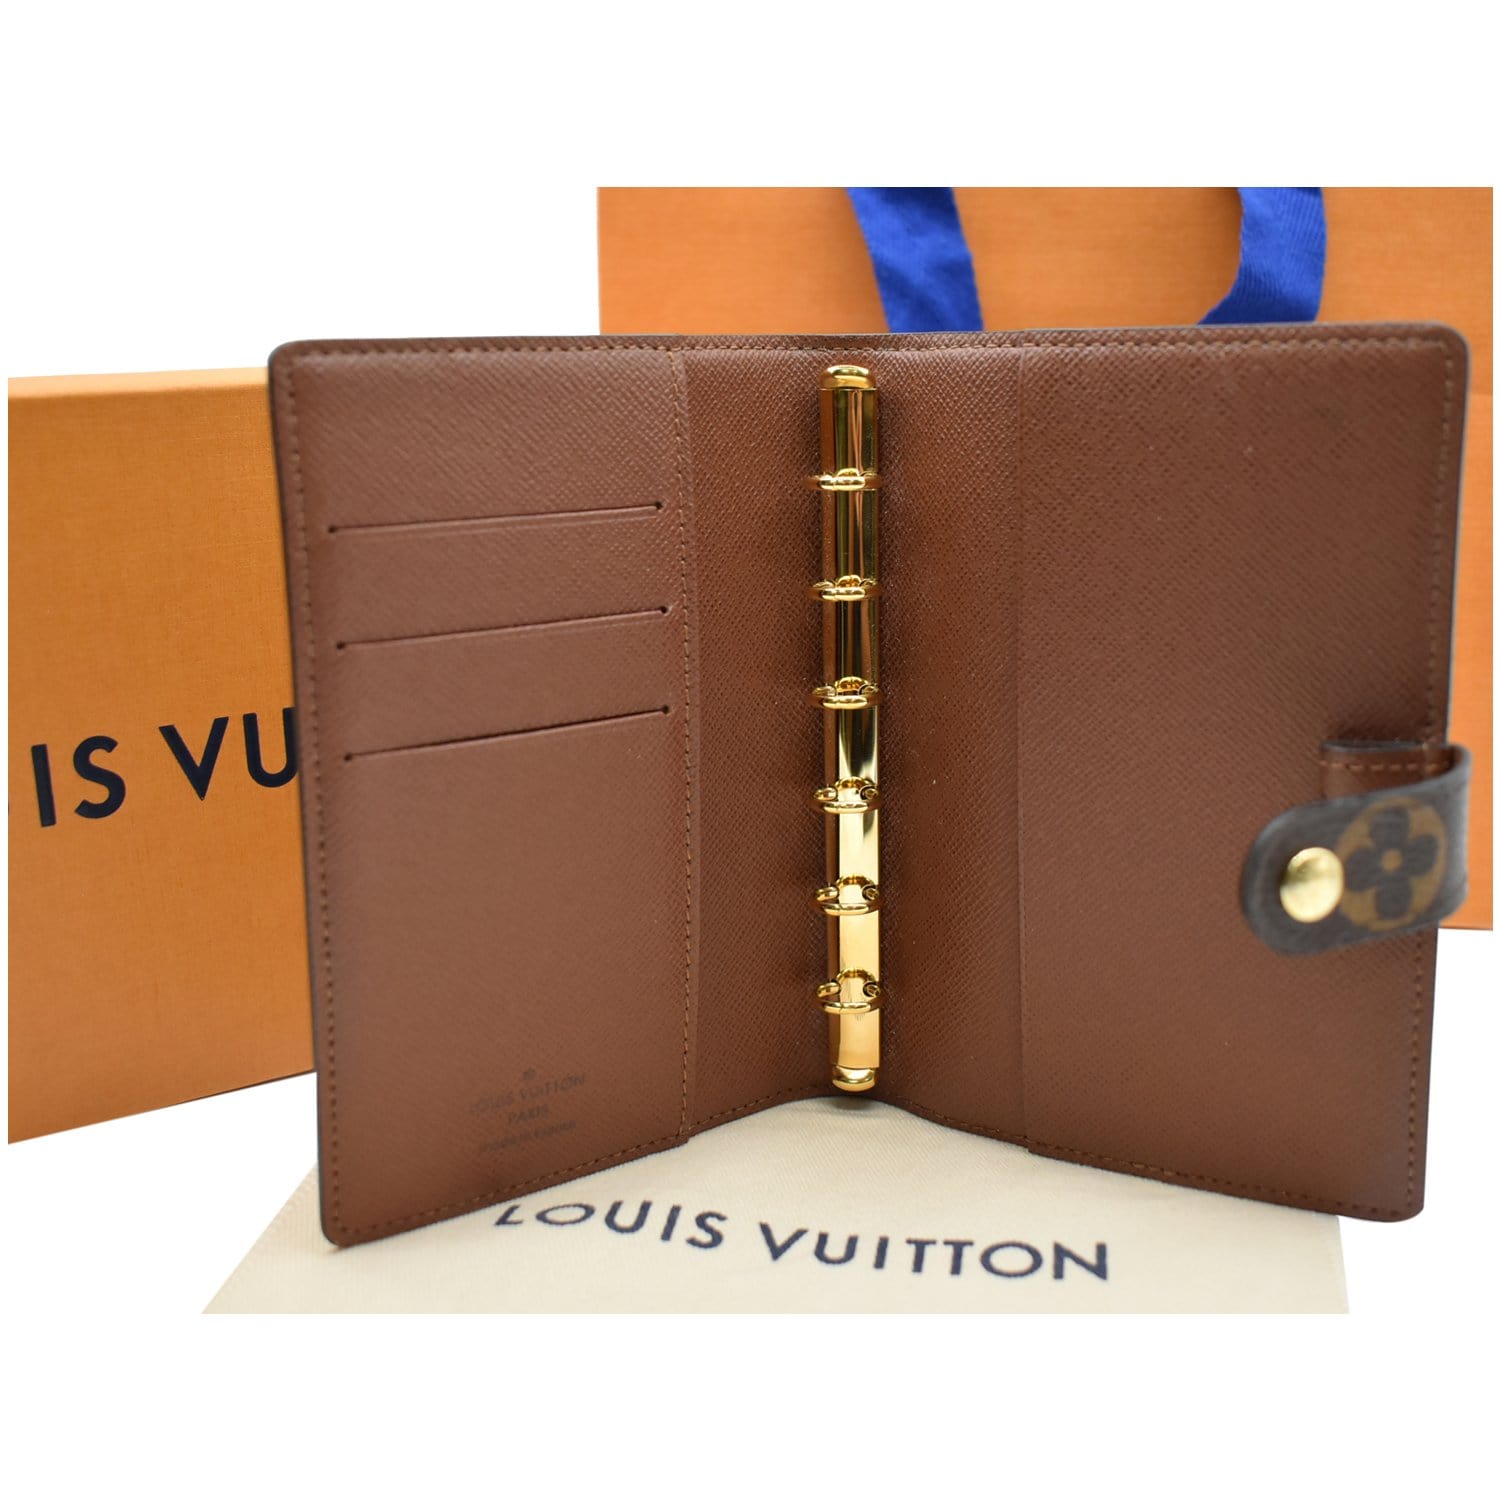 Brand New Authentic Louis Vuitton Agenda Monogram Agenda/Planner PM